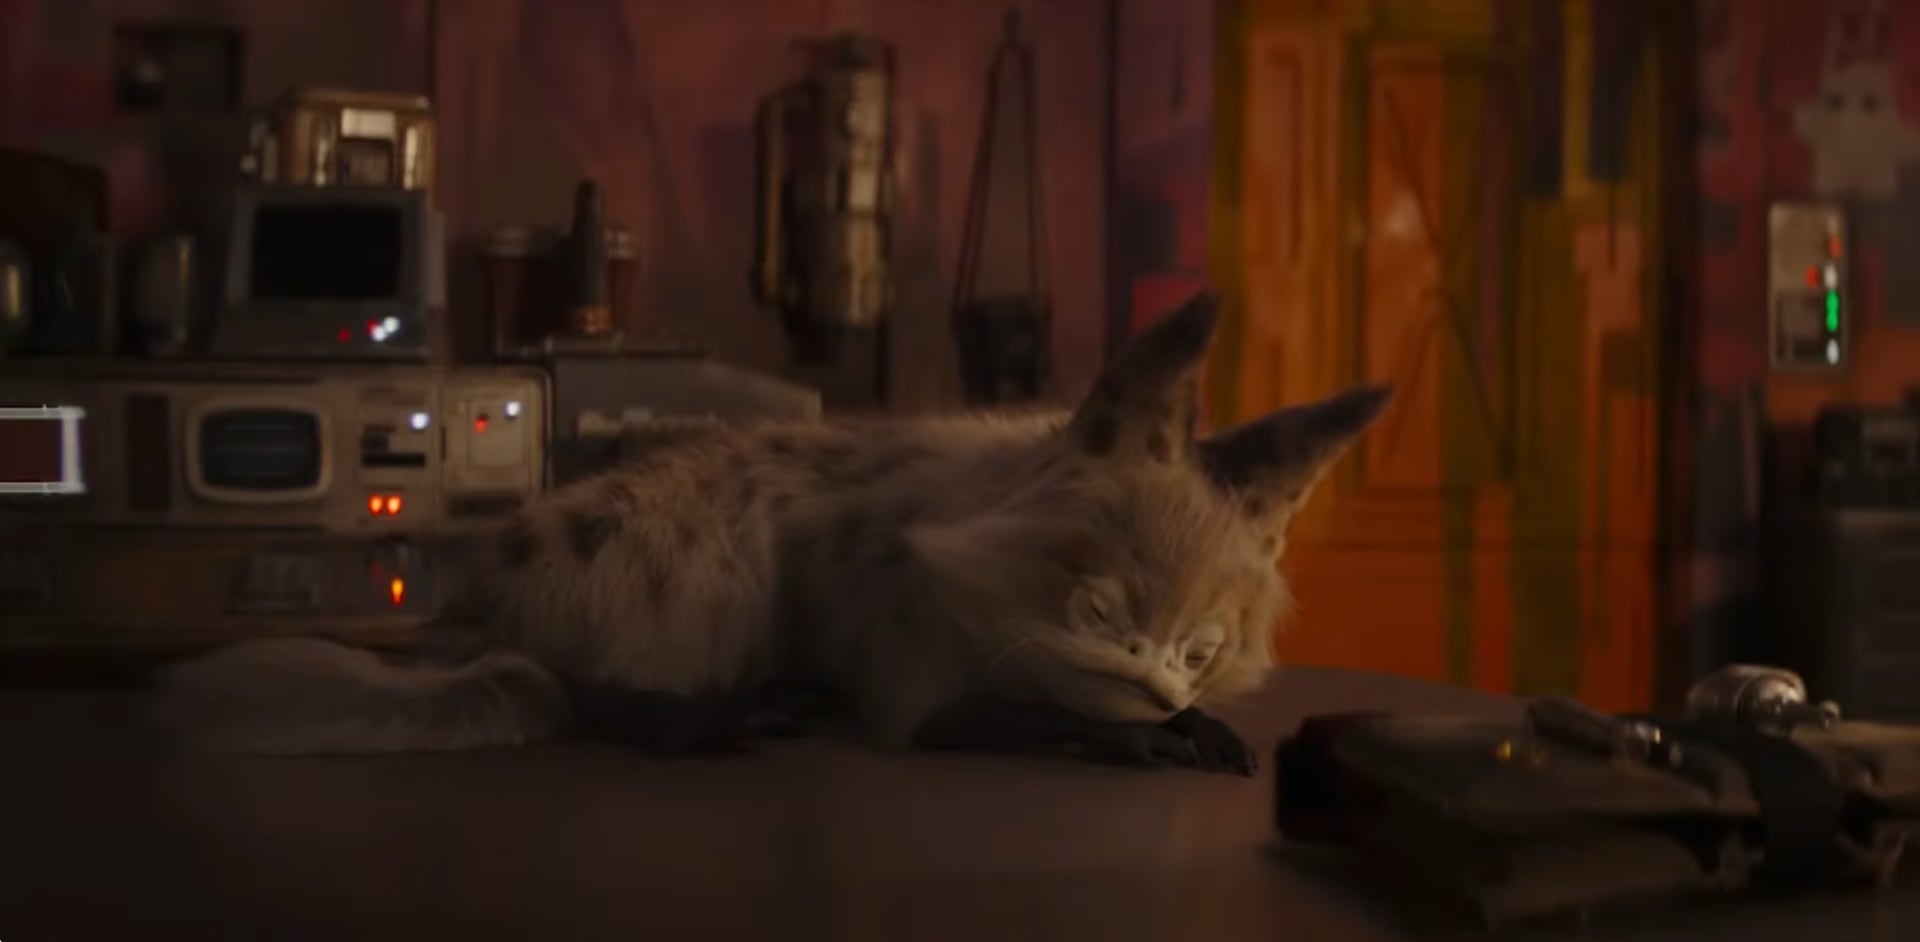 Disney heeft een 12 uur durende video vrijgegeven van Sabine Wren's loth-cat die slaapt. De video is al 200.000 keer bekeken.